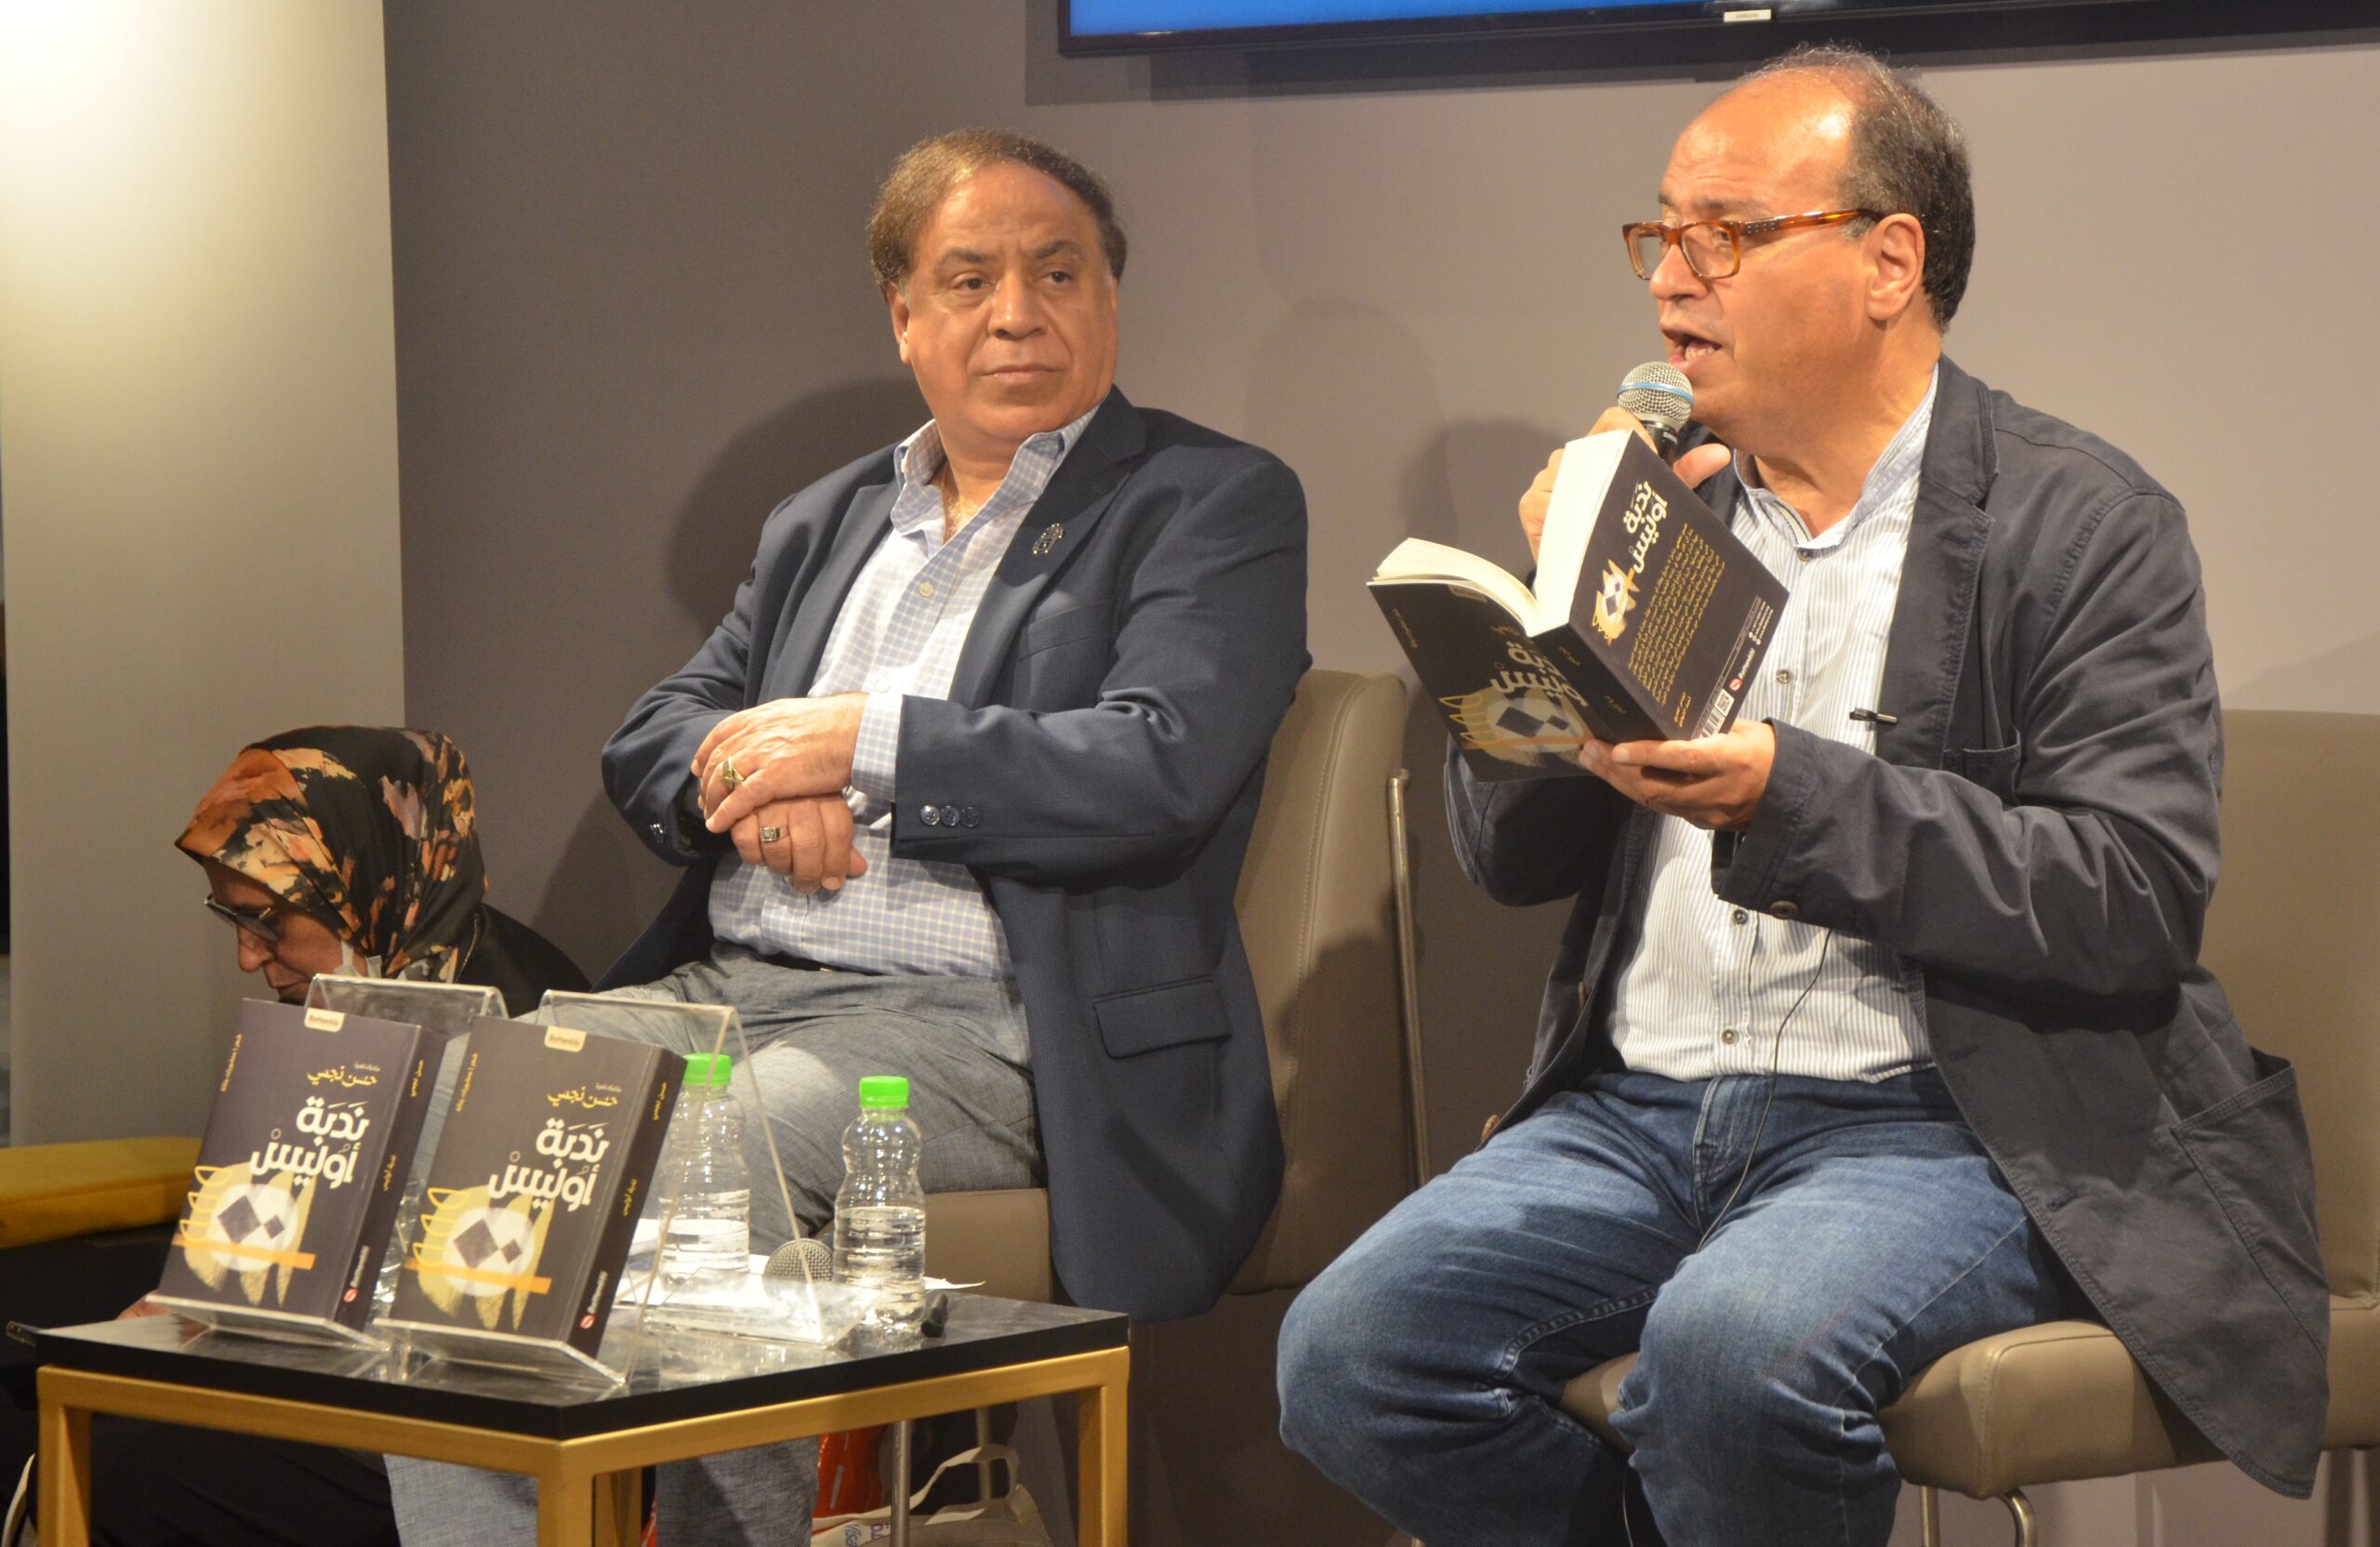 جلسة نقاش في معرض الكتاب حول “ندوب” حسن نجمي